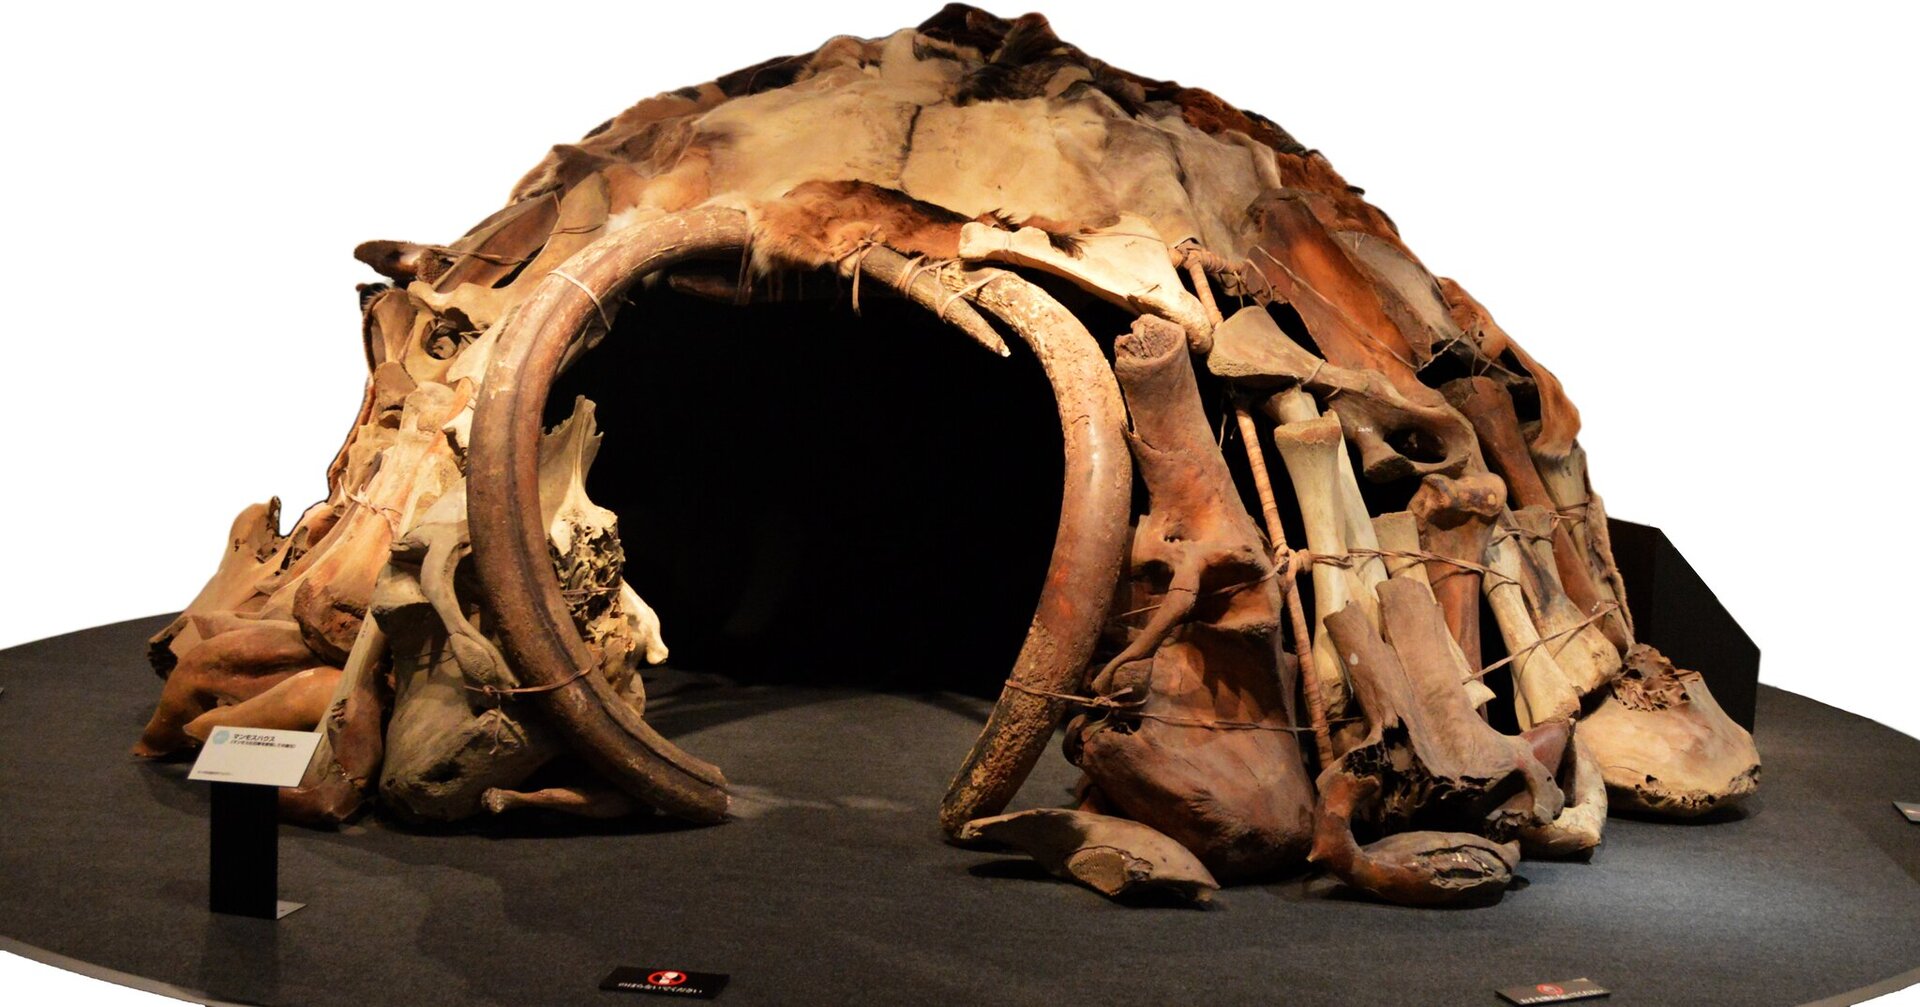 Zdjęcie przedstawia kopułowatą konstrukcję z okrągłym wejściem zbudowaną z kości mamuta.